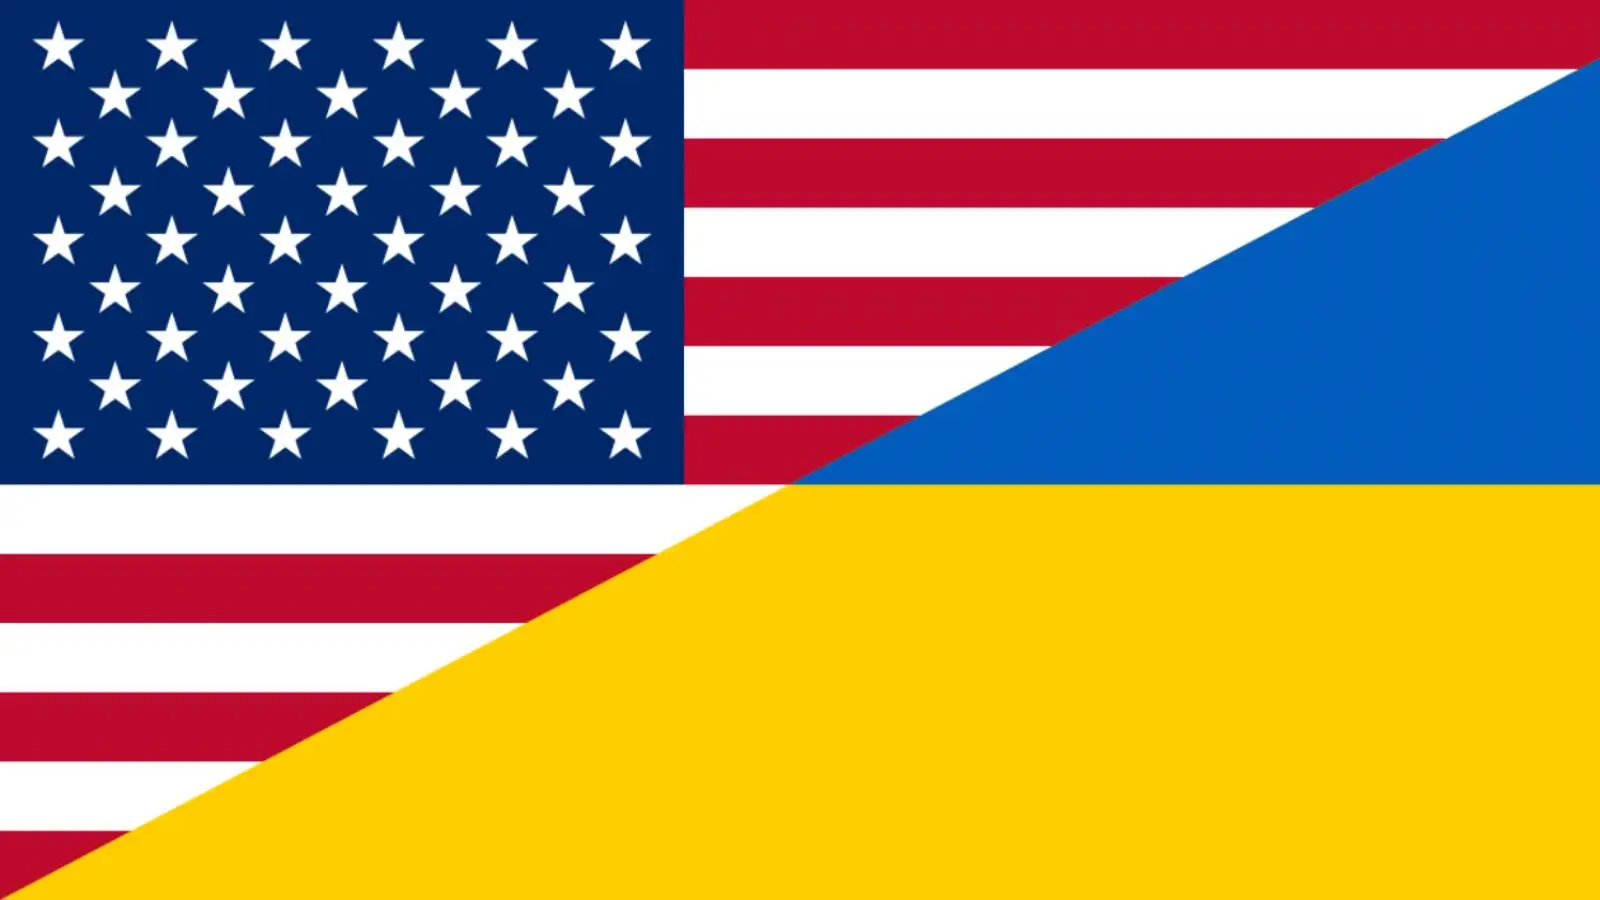 De VS kondigen een uiterst belangrijk officieel besluit voor Oekraïne aan